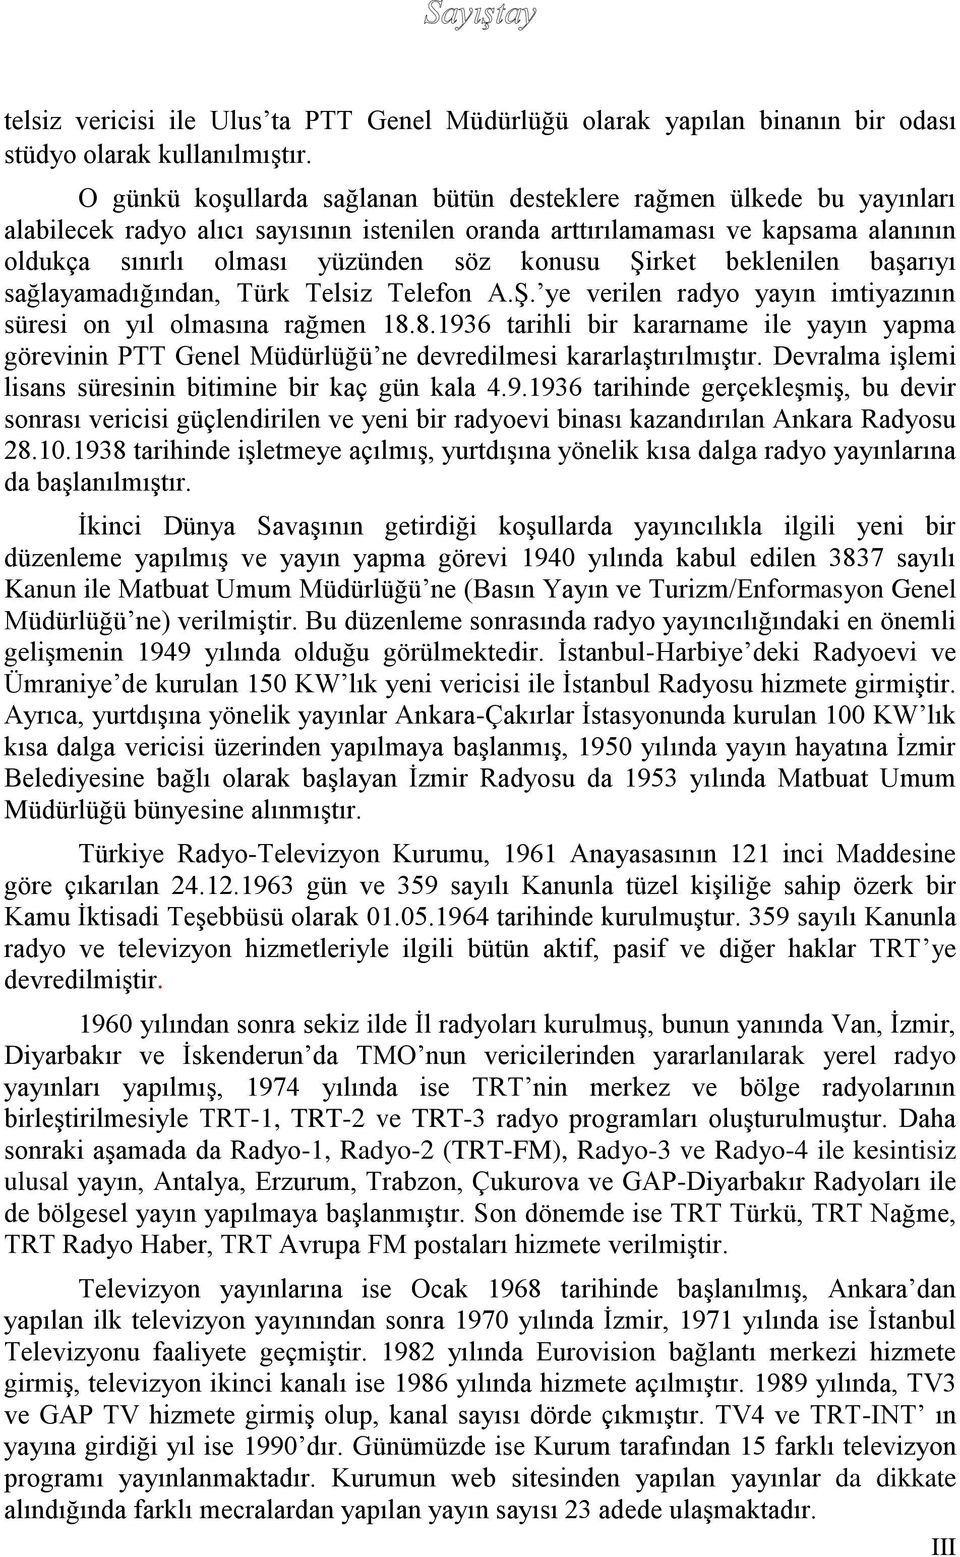 konusu Şirket beklenilen başarıyı sağlayamadığından, Türk Telsiz Telefon A.Ş. ye verilen radyo yayın imtiyazının süresi on yıl olmasına rağmen 18.